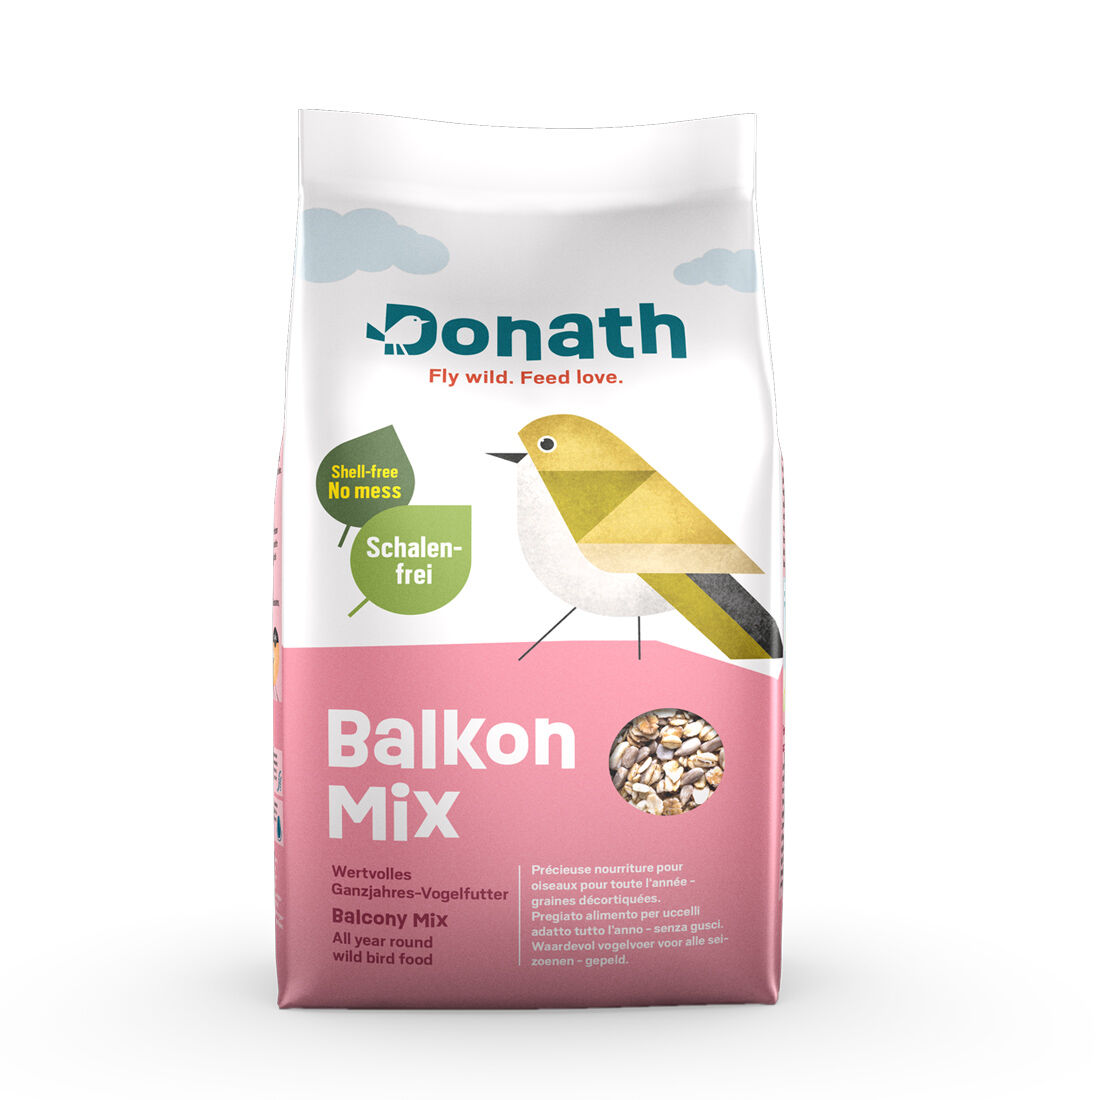 Donath-Balkon-Mix-Streufutter-Vital-schalenfrei-45-74035